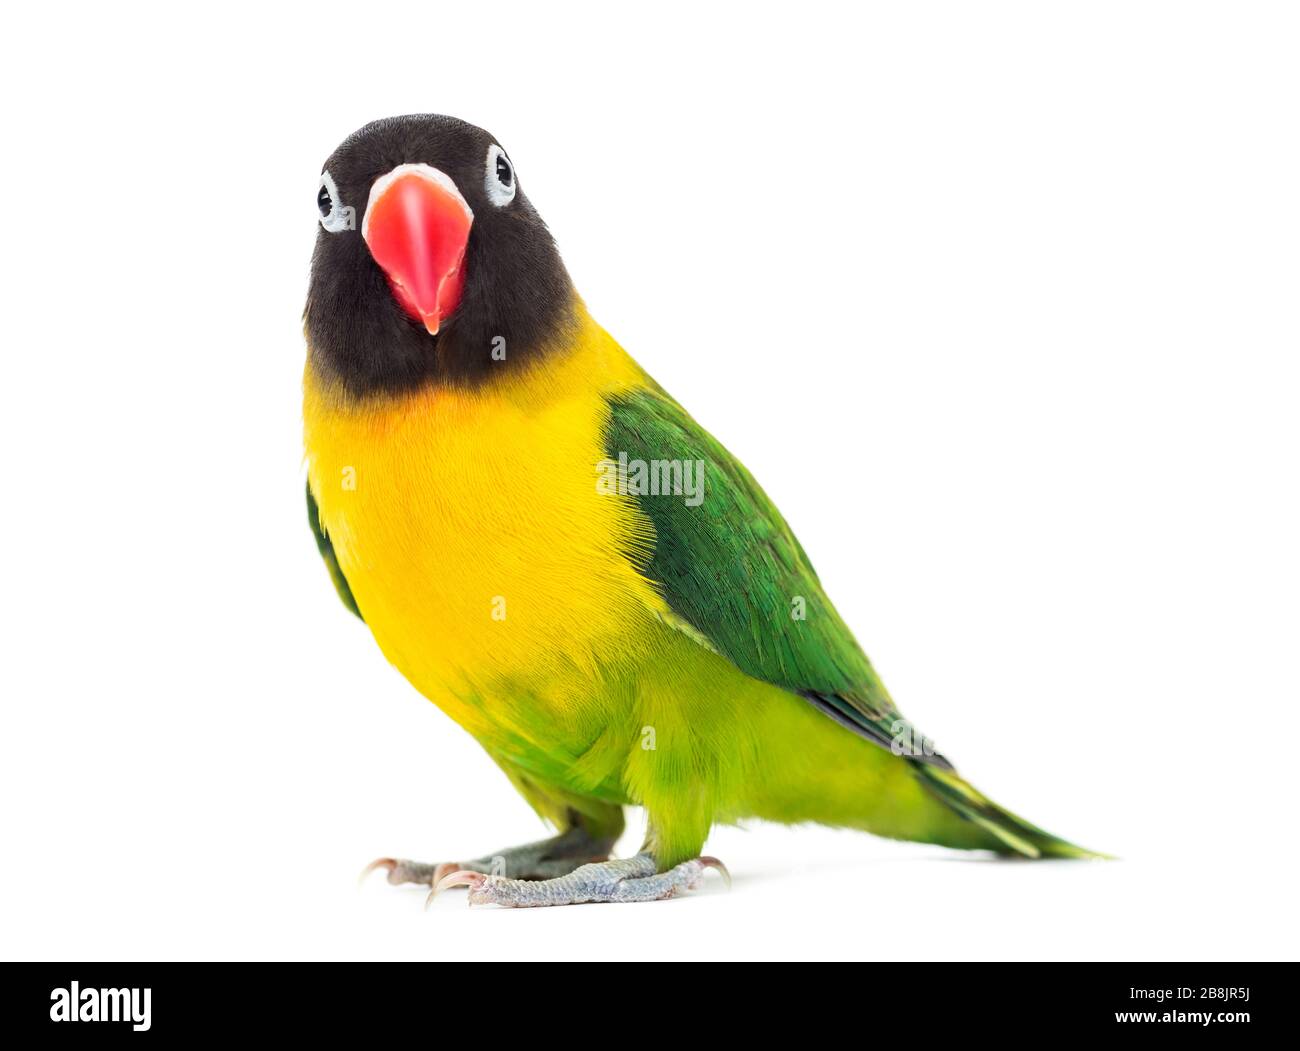 Gelb-Kragen Lovebird beobachtet die Kamera, isoliert auf weiss Stockfoto